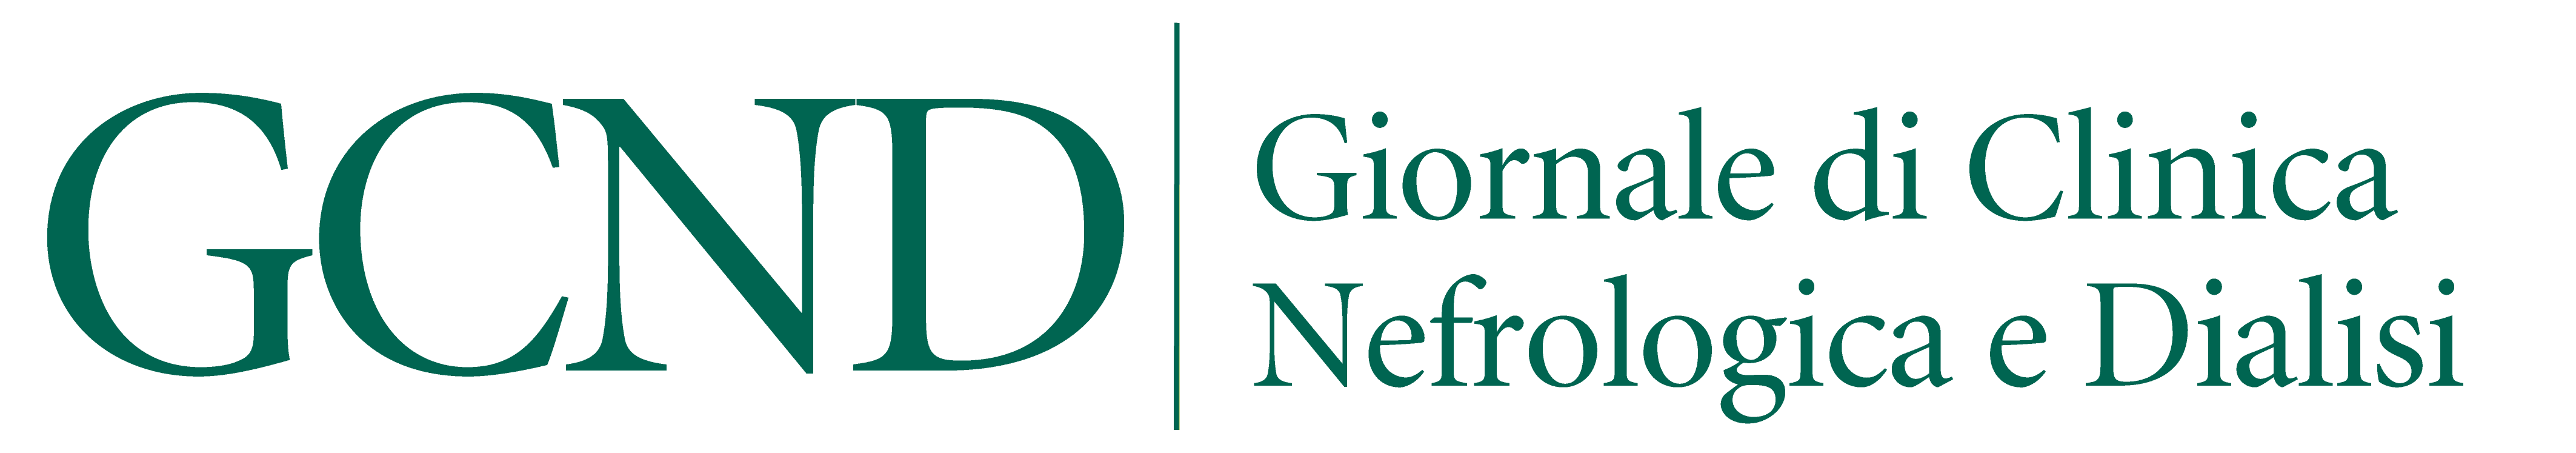 GCND_logo